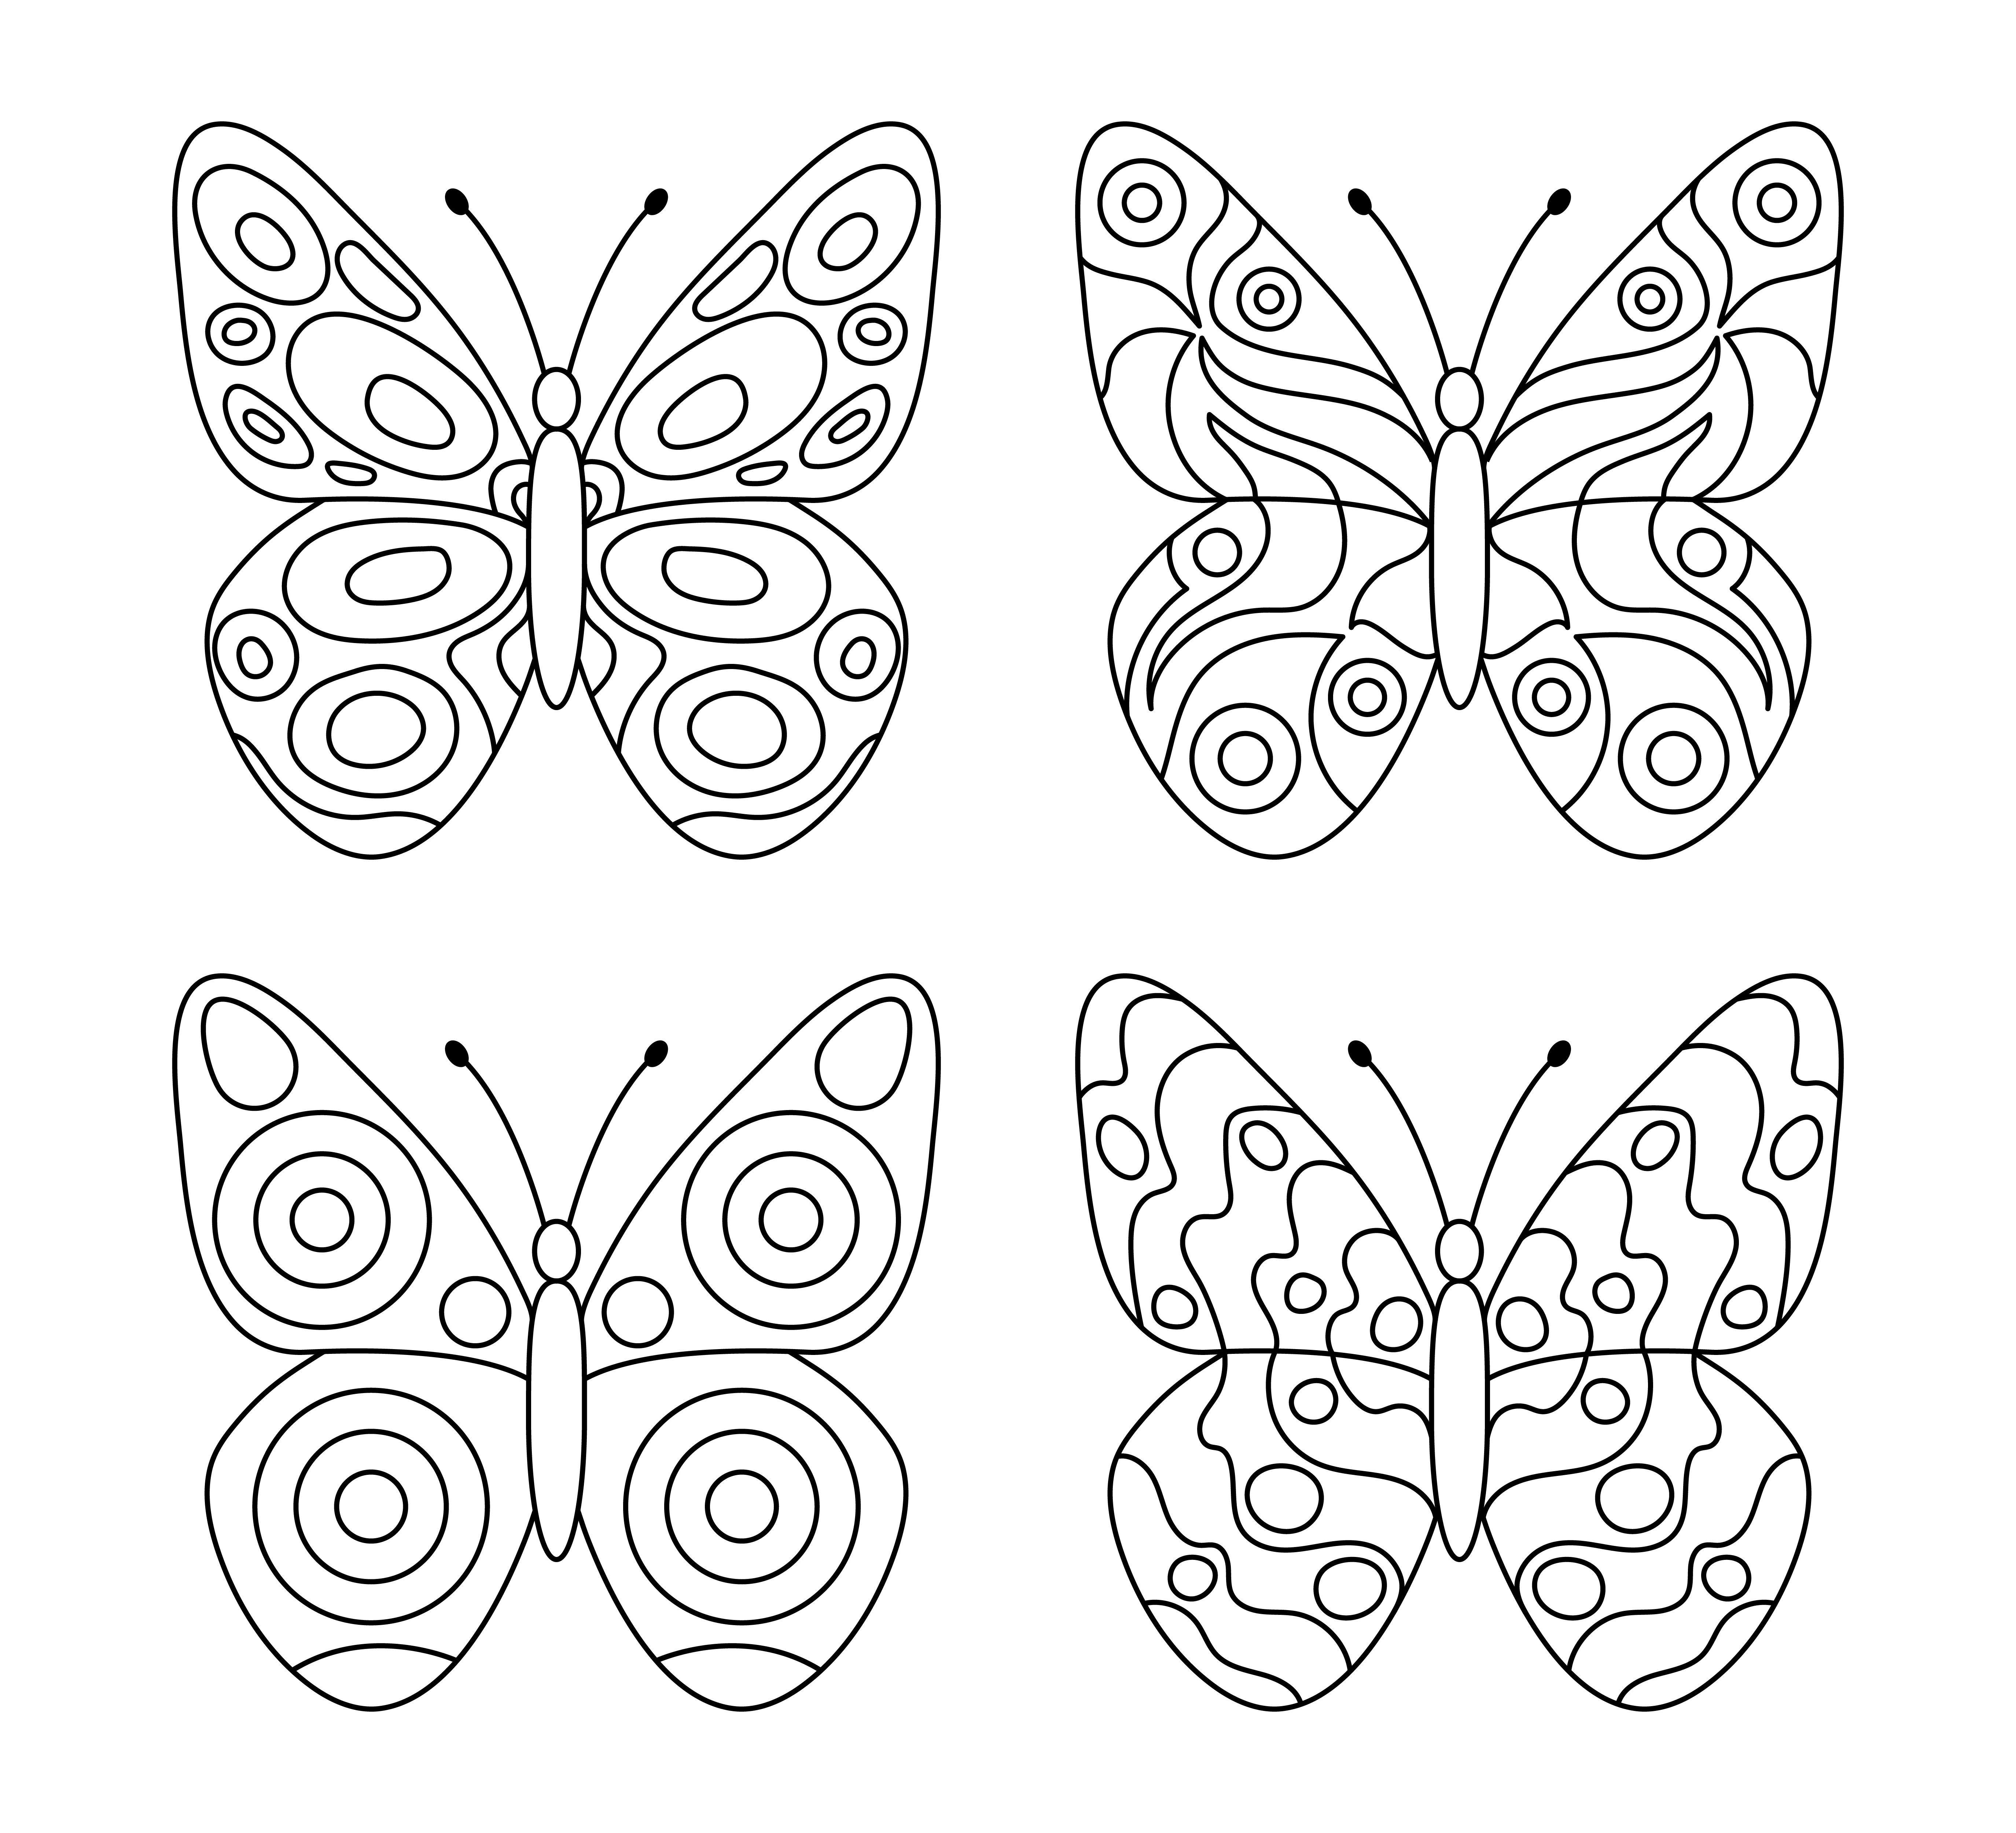 Раскраски для детей 4 5 бабочки. Бабочка раскраска для детей. Шаблоны бабочек для раскрашивания детям. Бабочка раскраска для малышей. Бобичкий для детей раскраска.